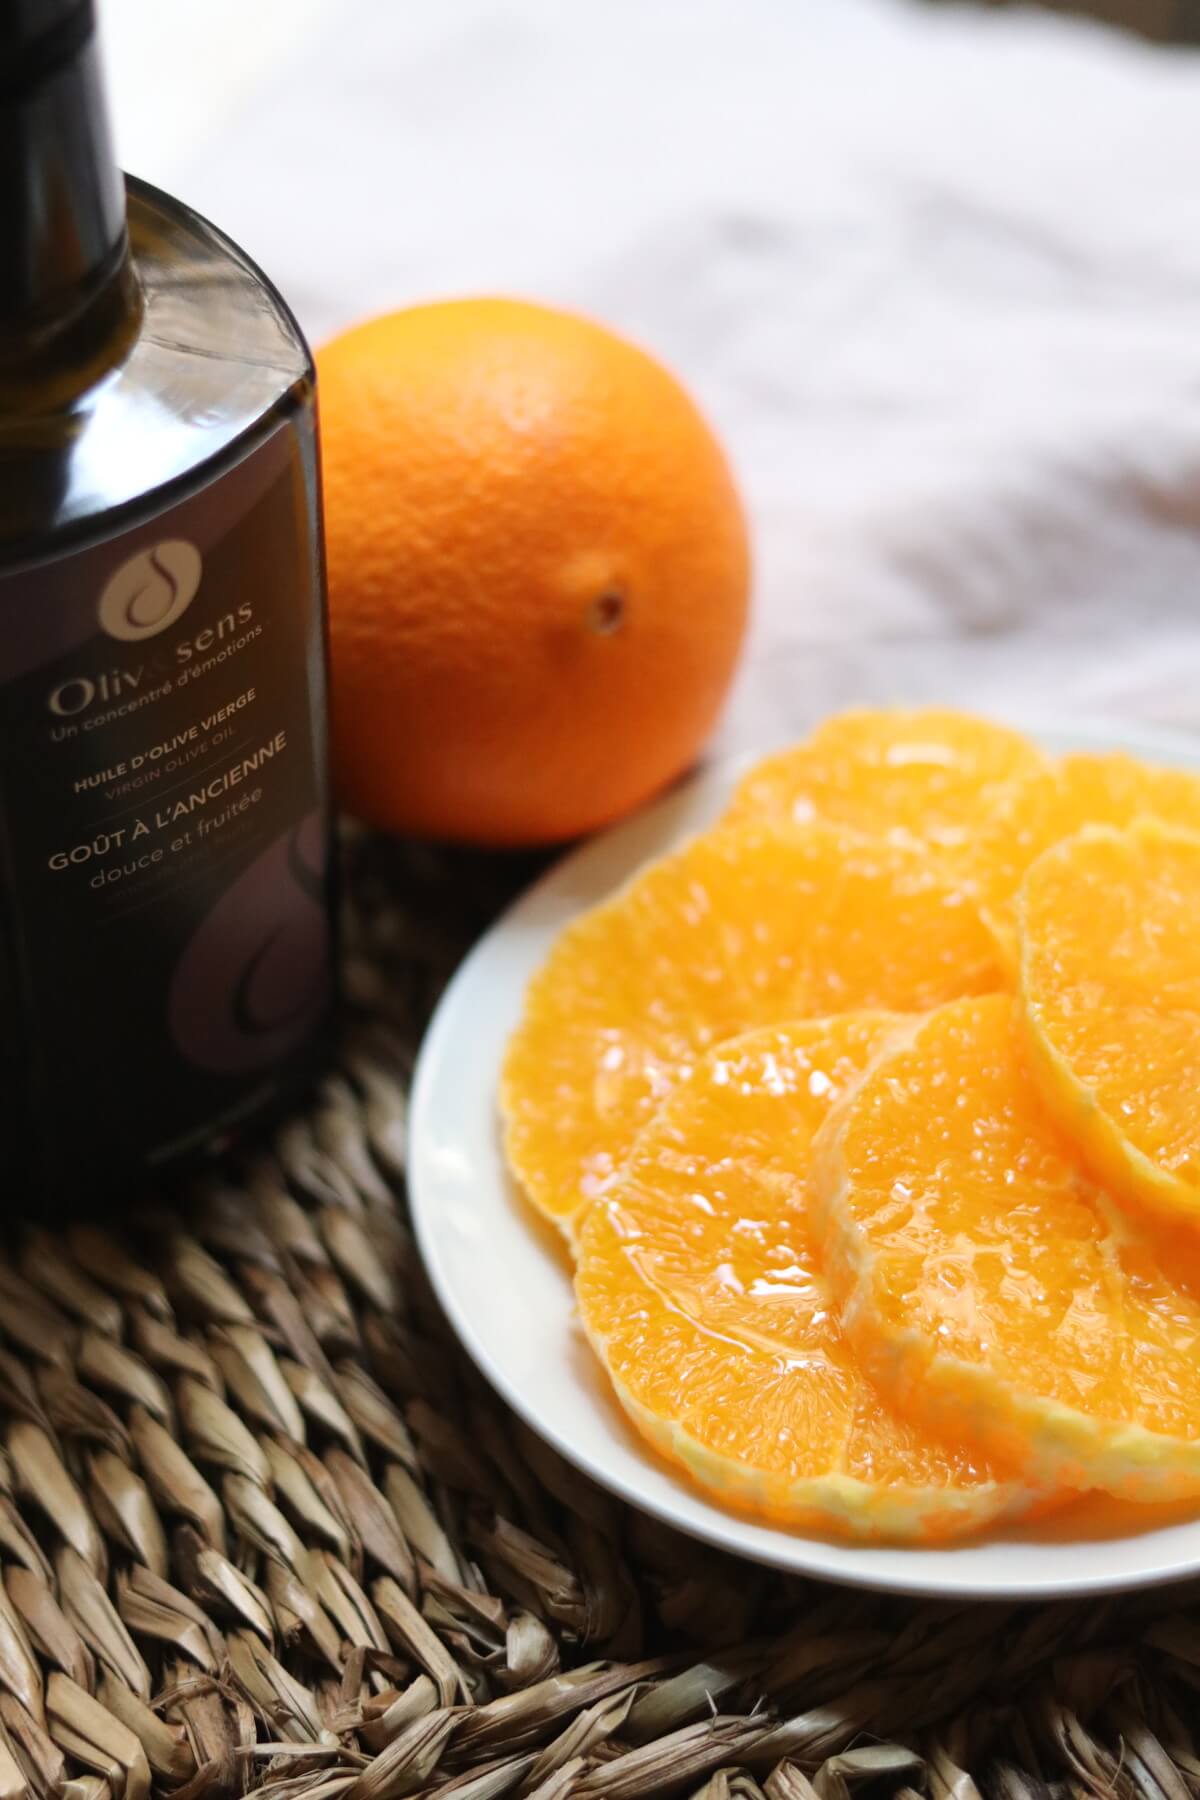 Oranges & huile d’olive Goût à l’ancienne